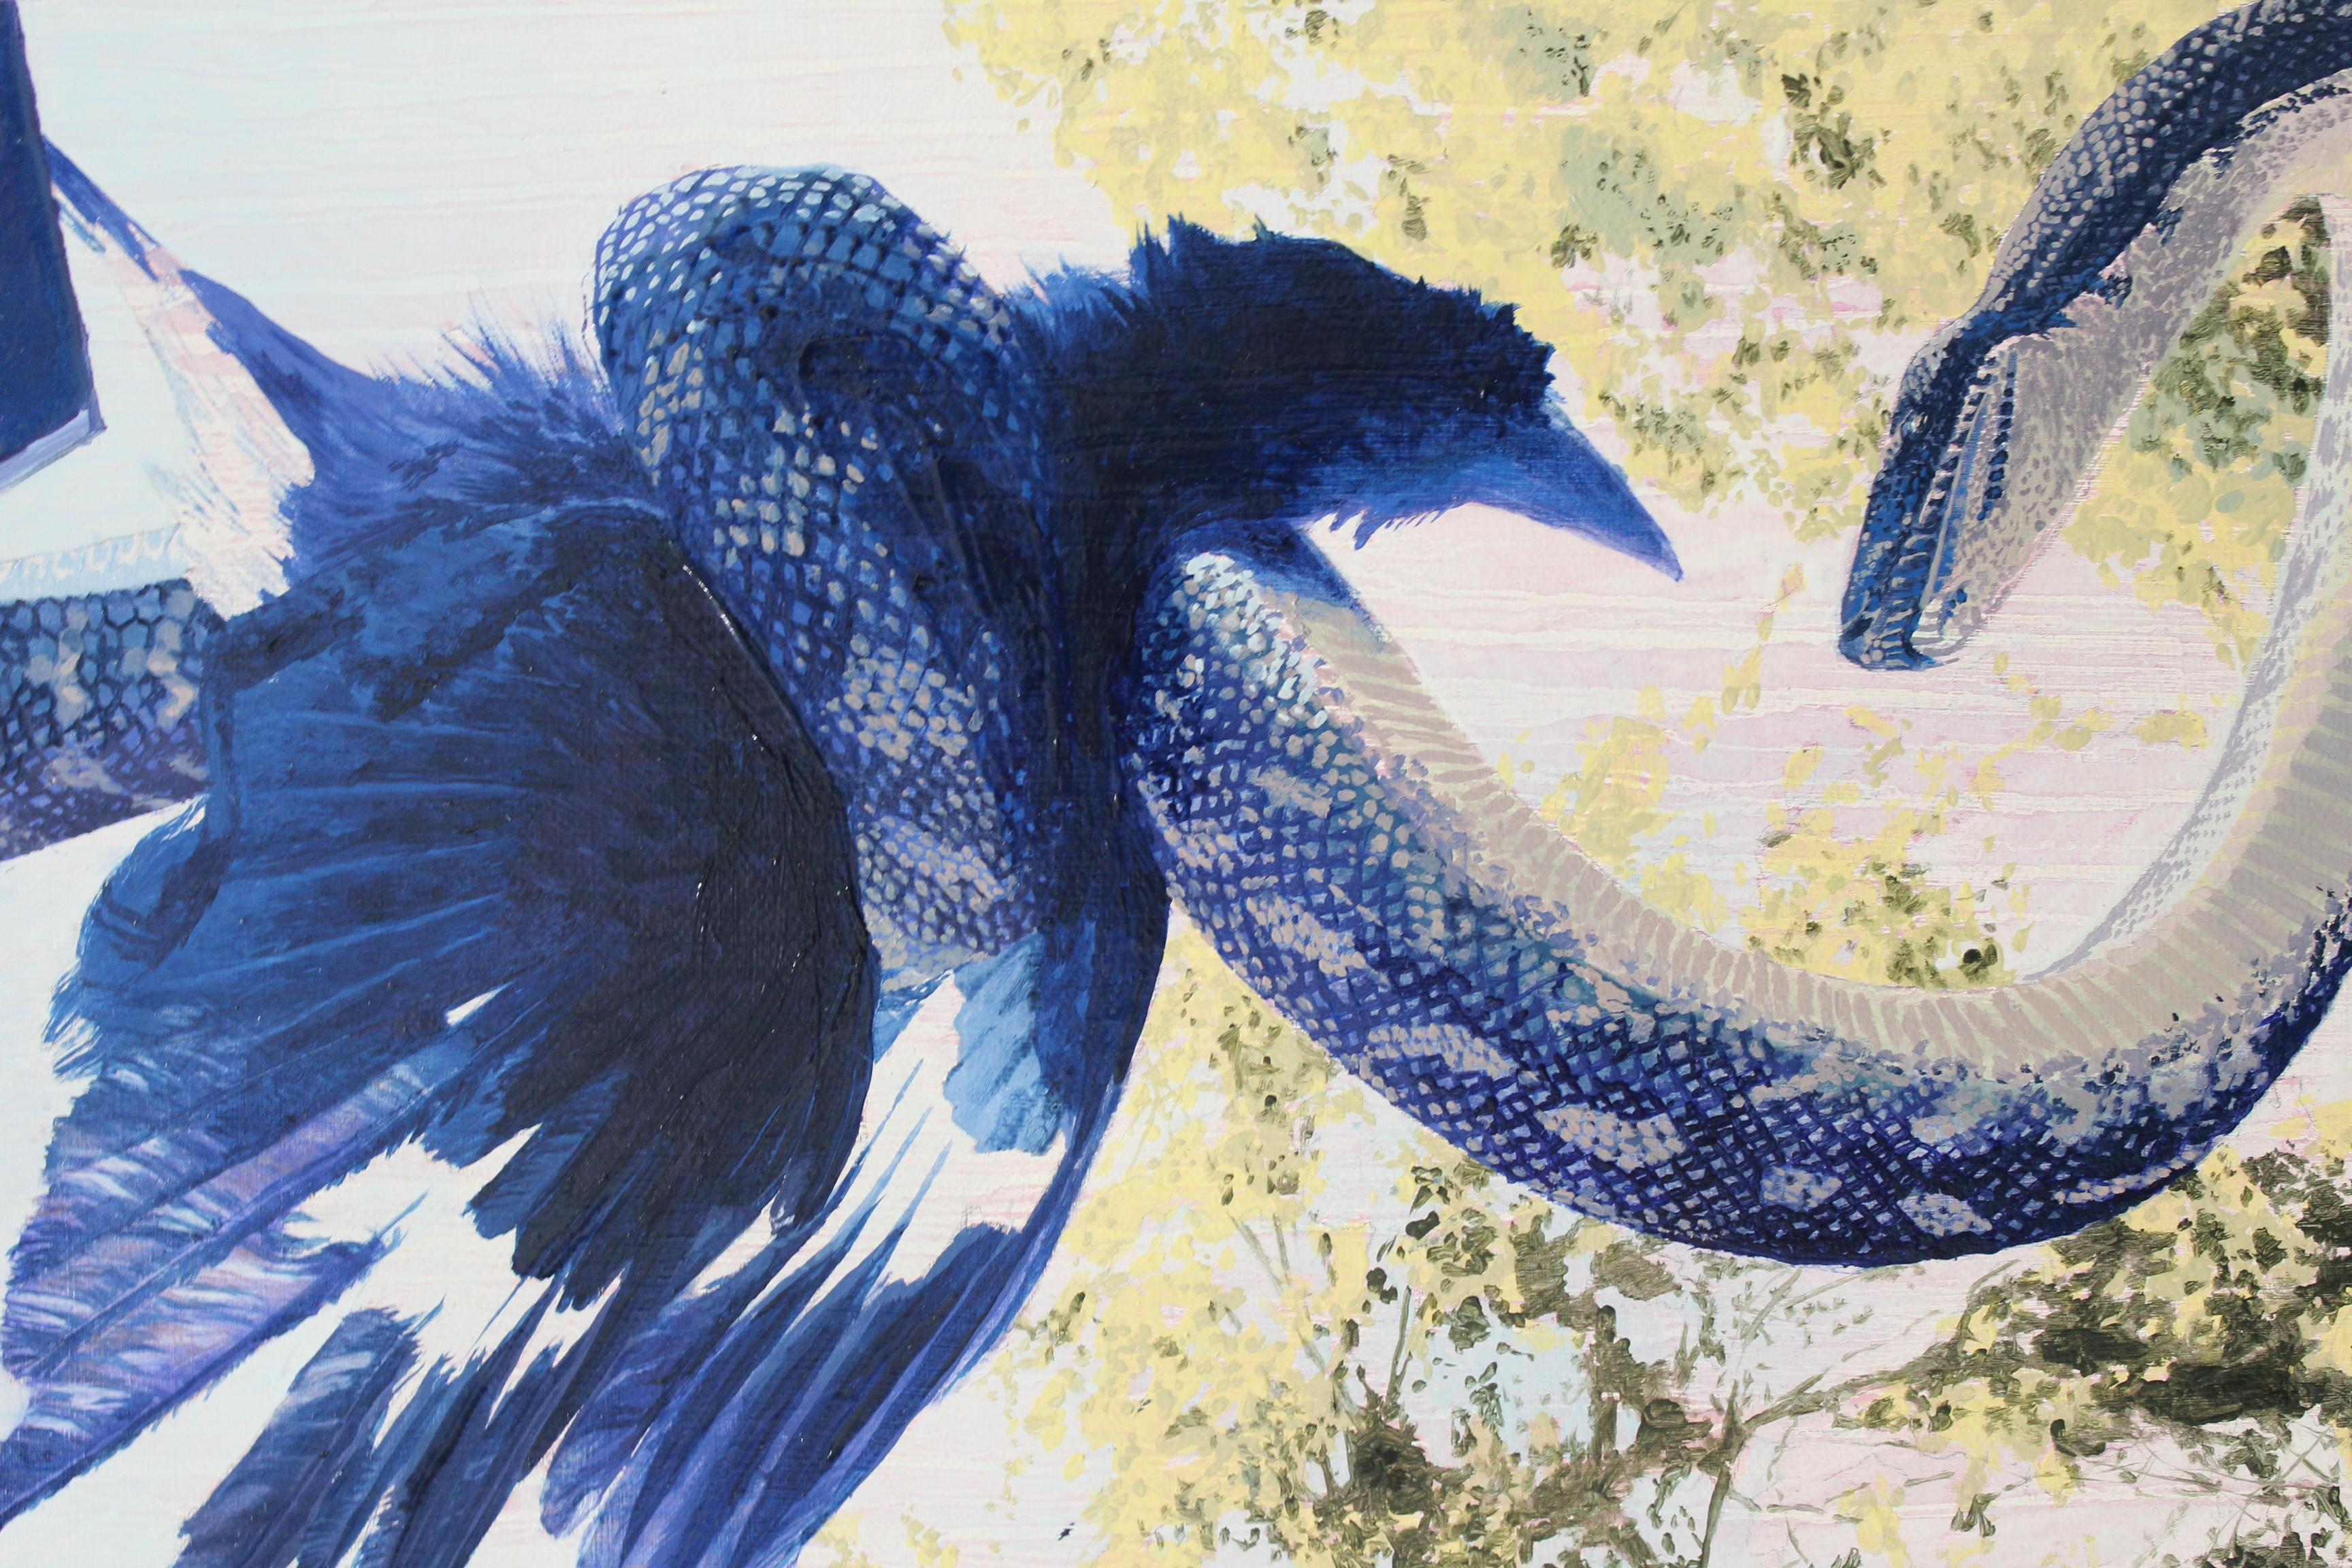 Snake vs. Oiseau - Contemporain Painting par Paige DeVries